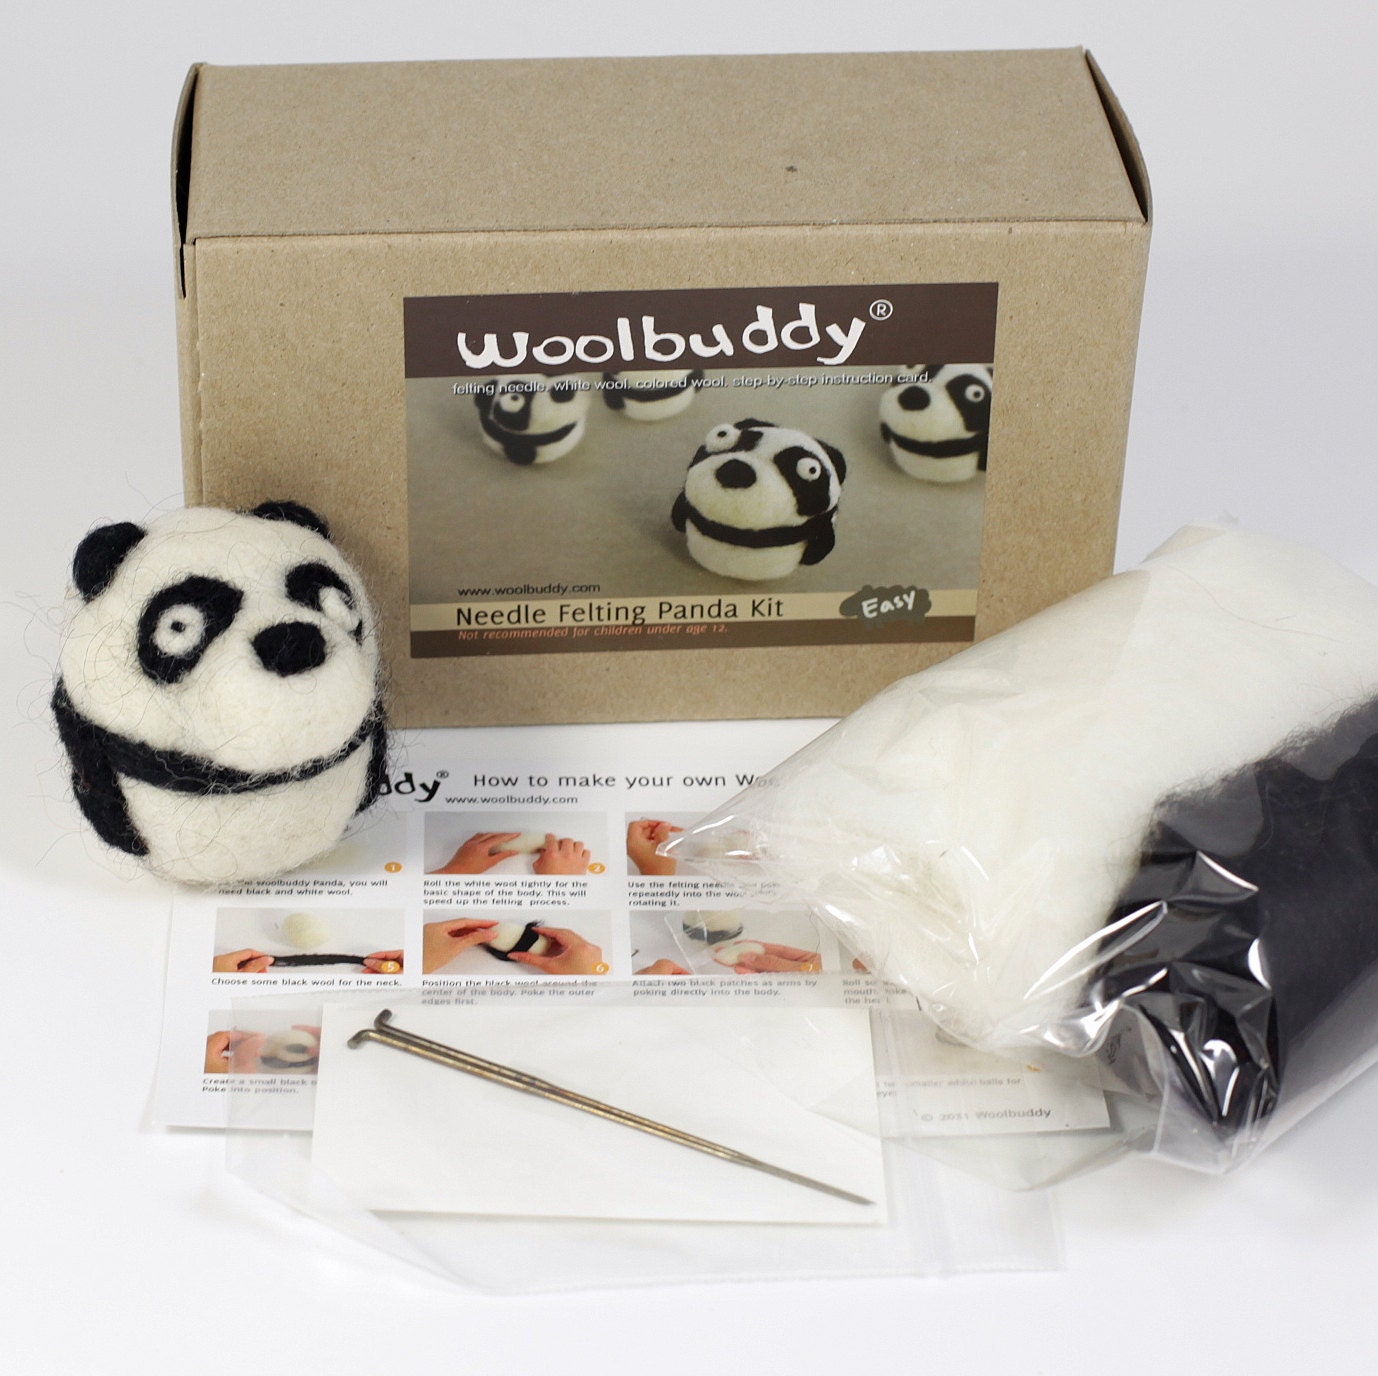 Needle felting panda kit